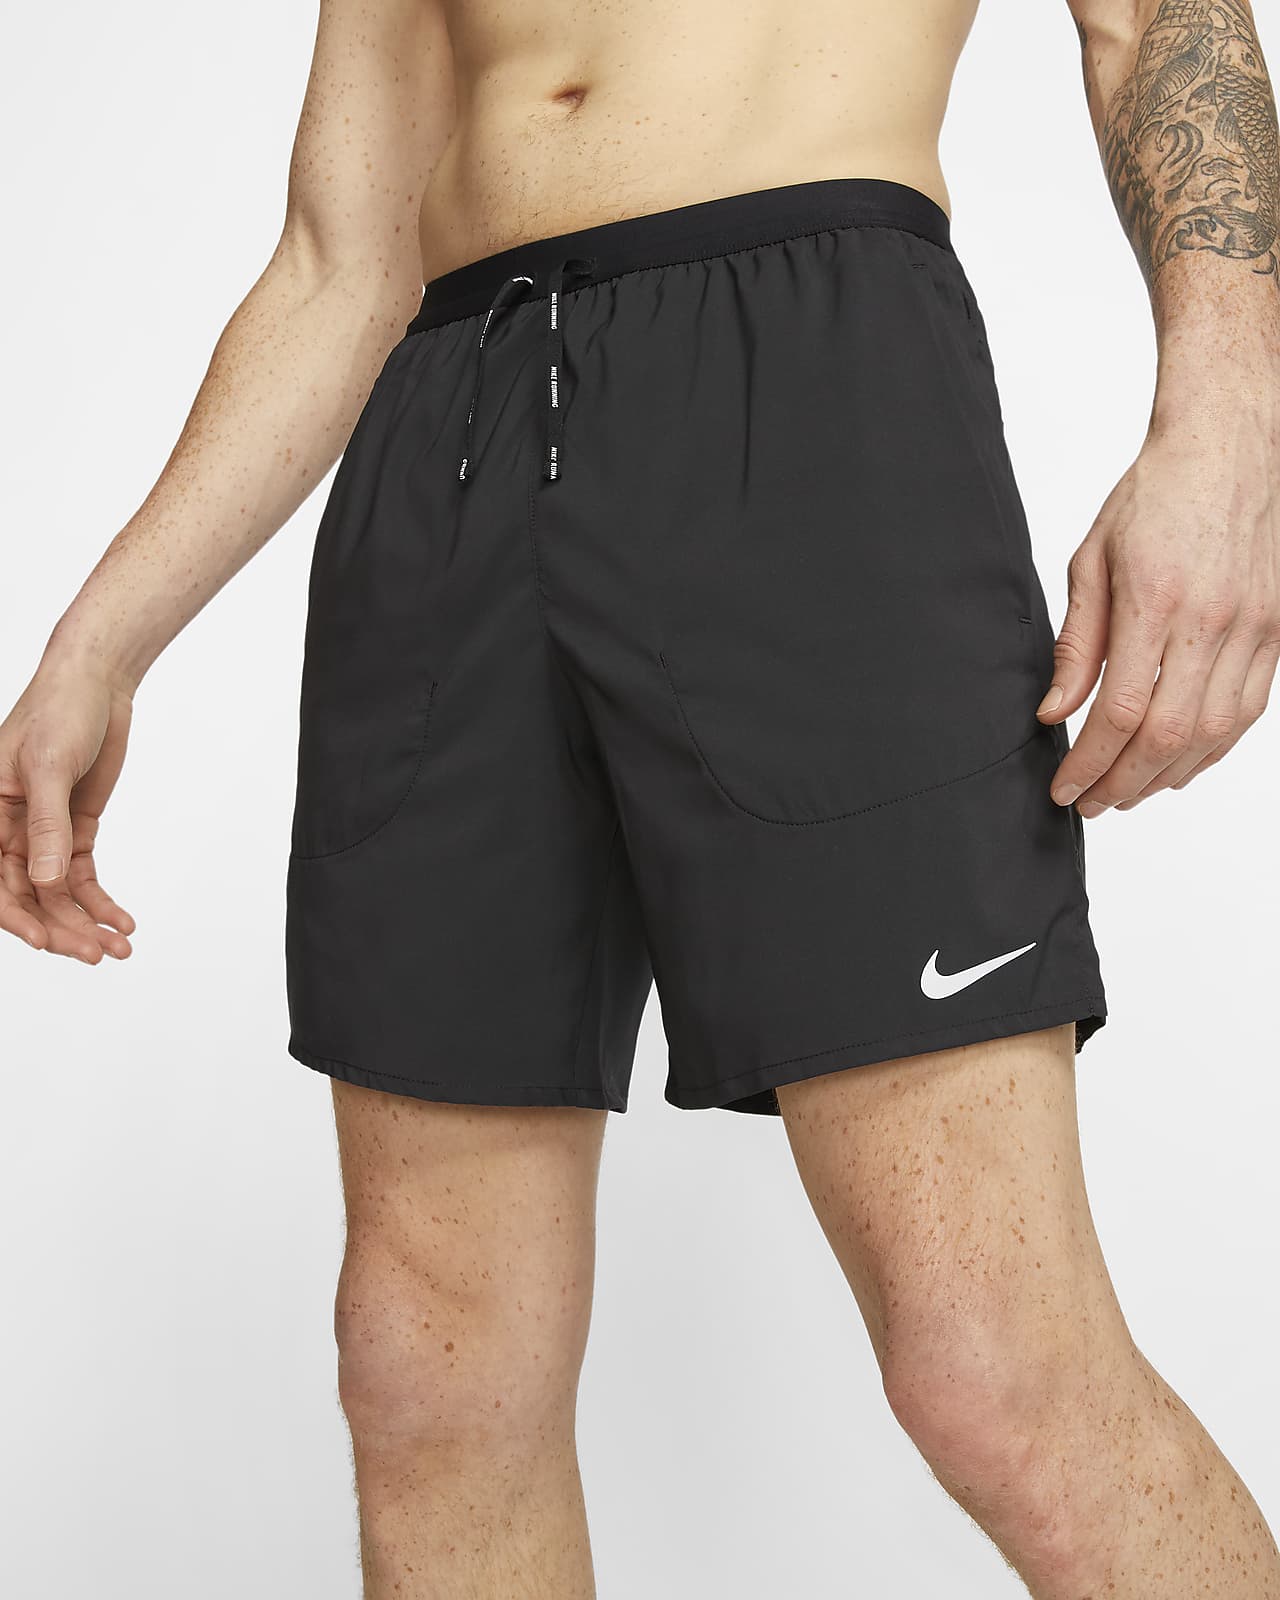 nike short running shorts